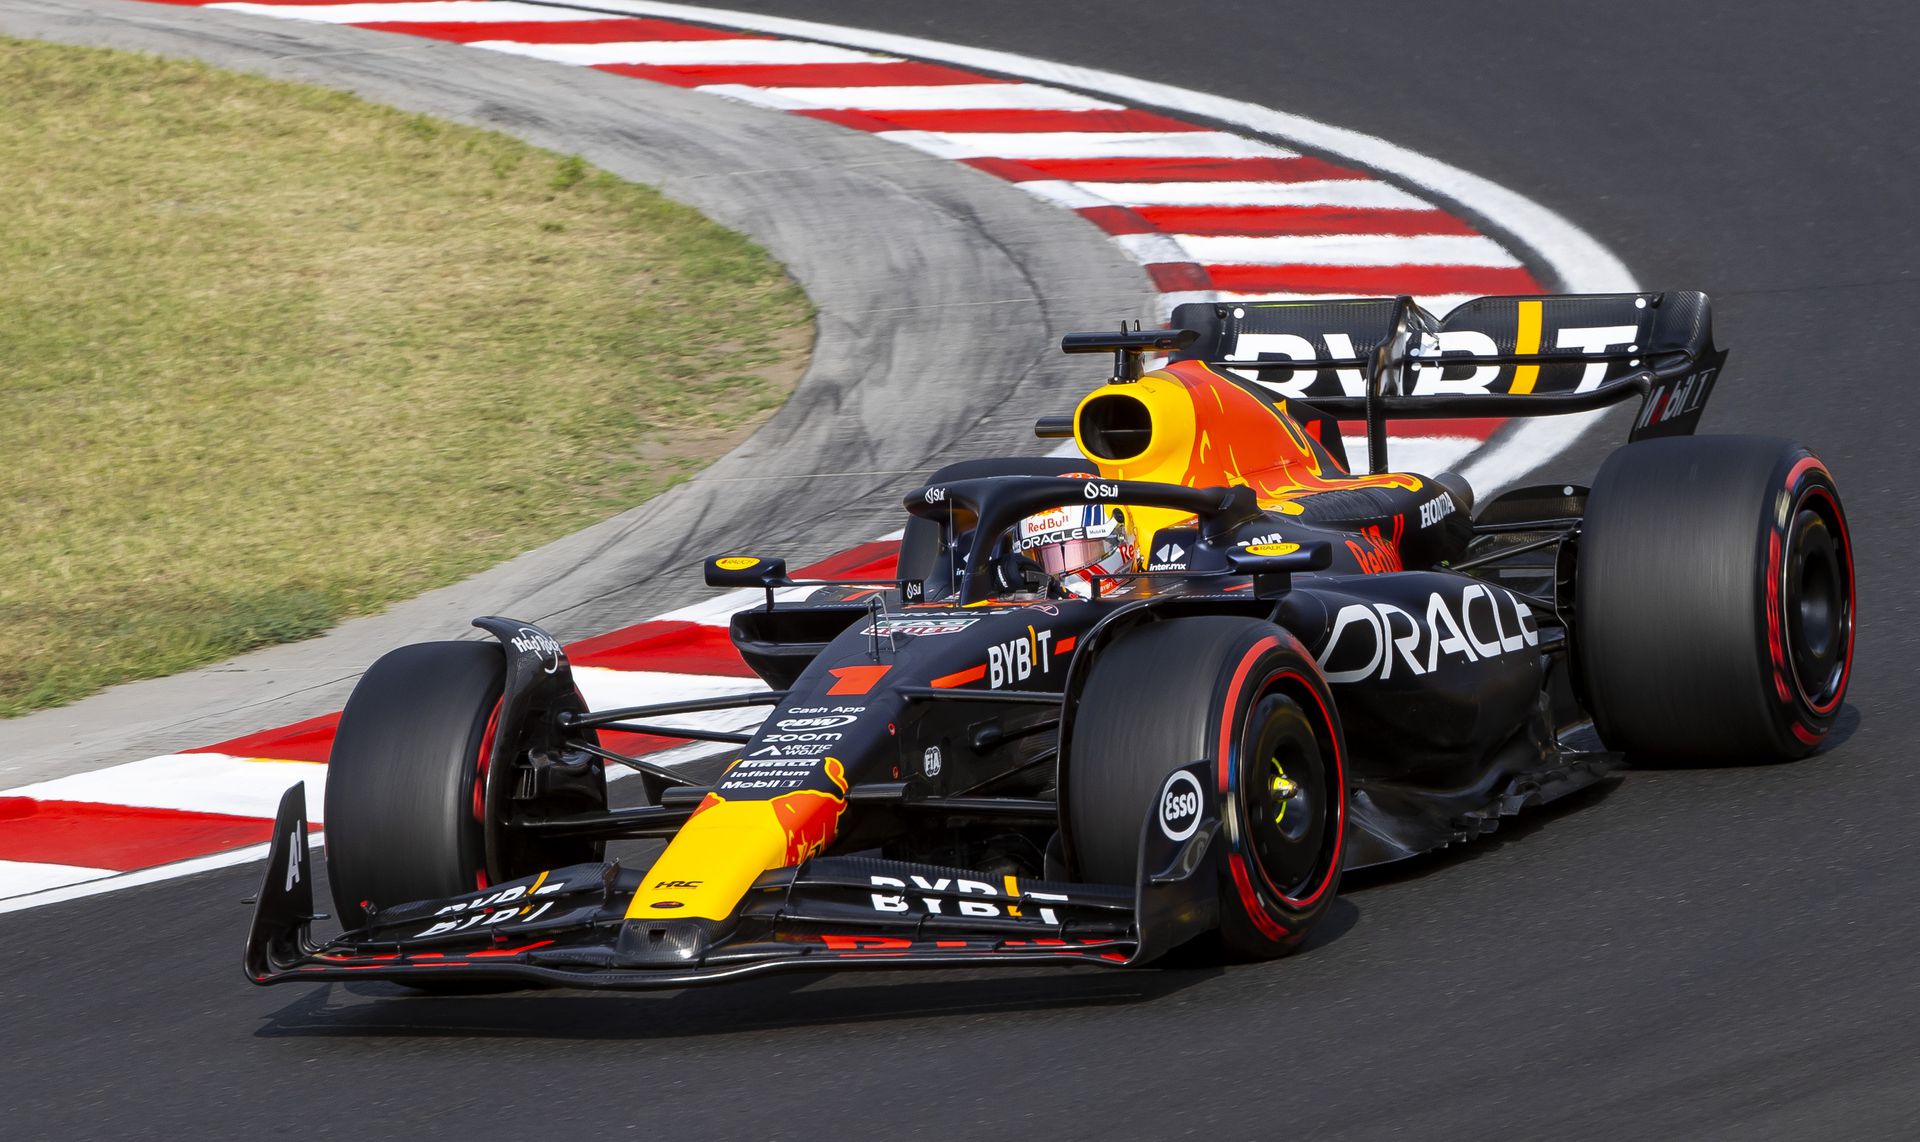 Zsinórban harmadik vb-sikerét arathatja a Red Bull Racing sztárja